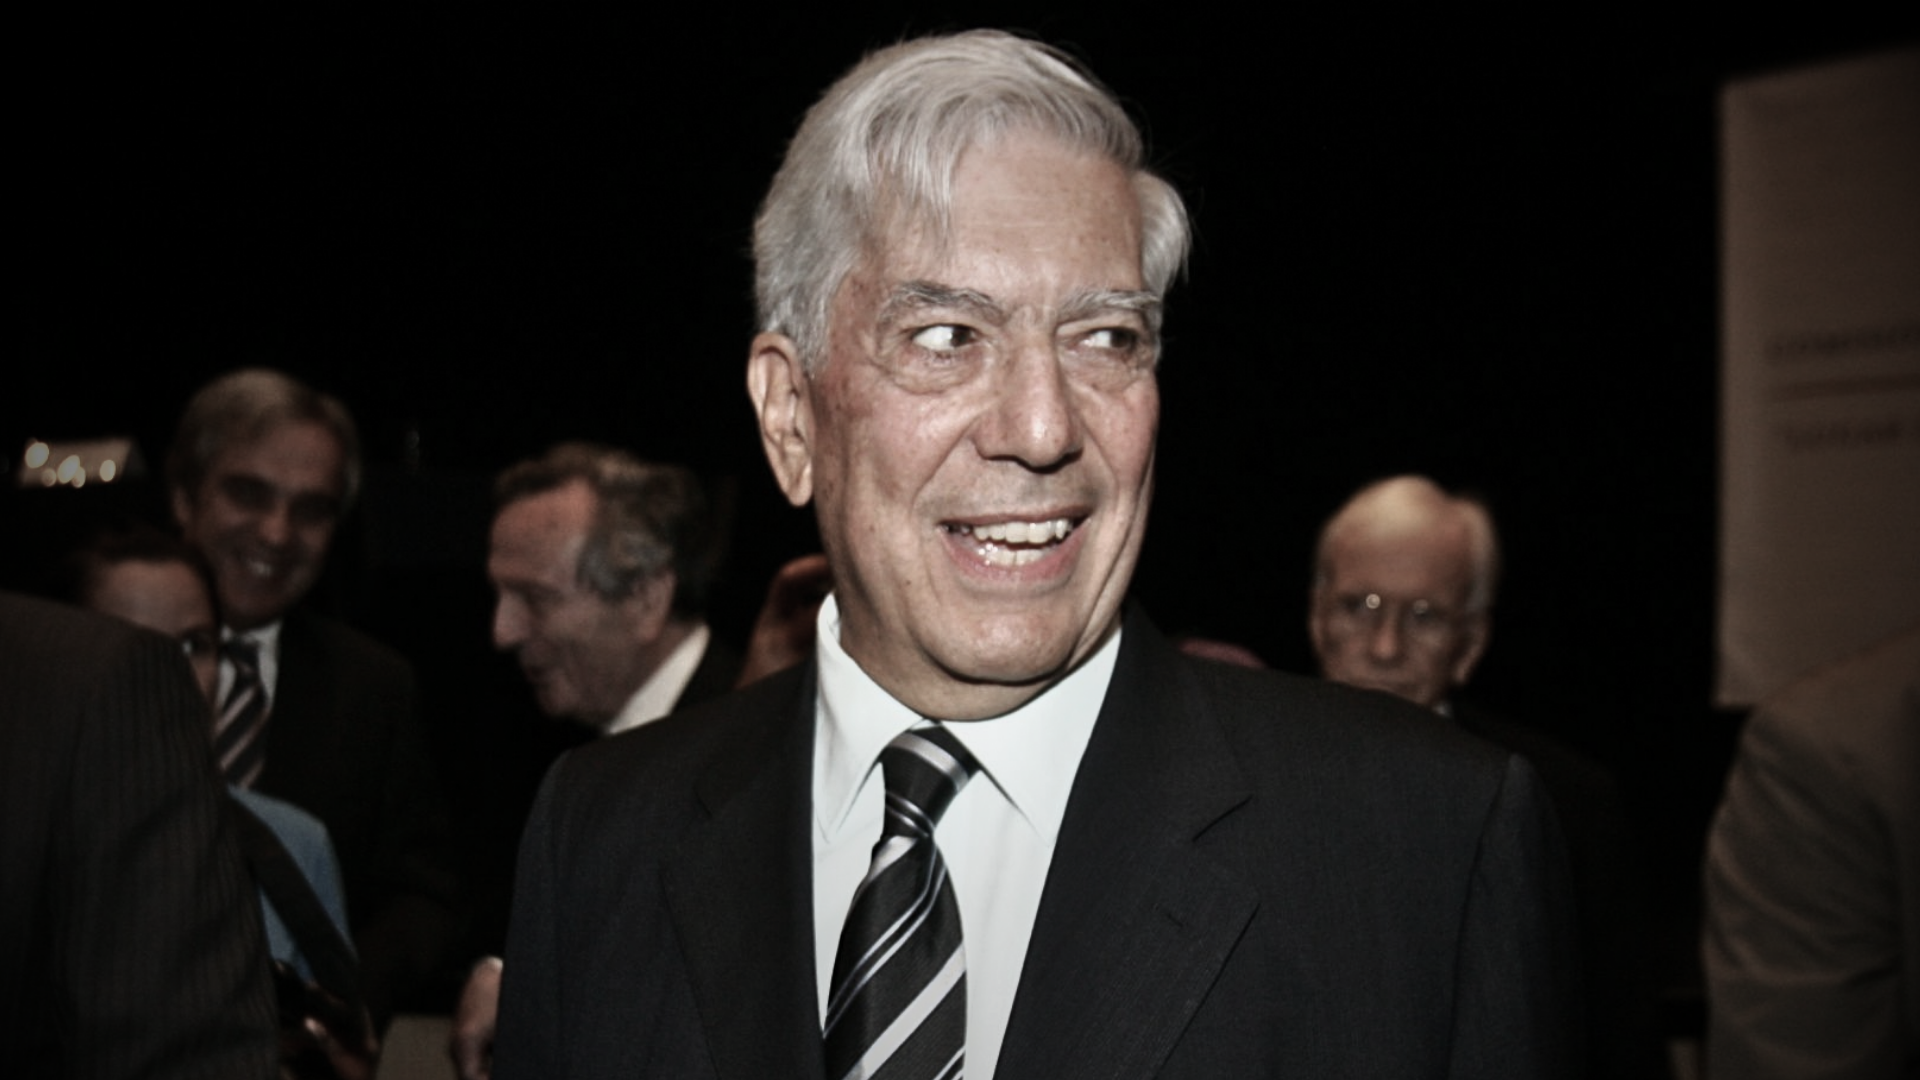 El día que Mario Vargas Llosa pensó que era una broma el haber ganado el Nobel de Literatura